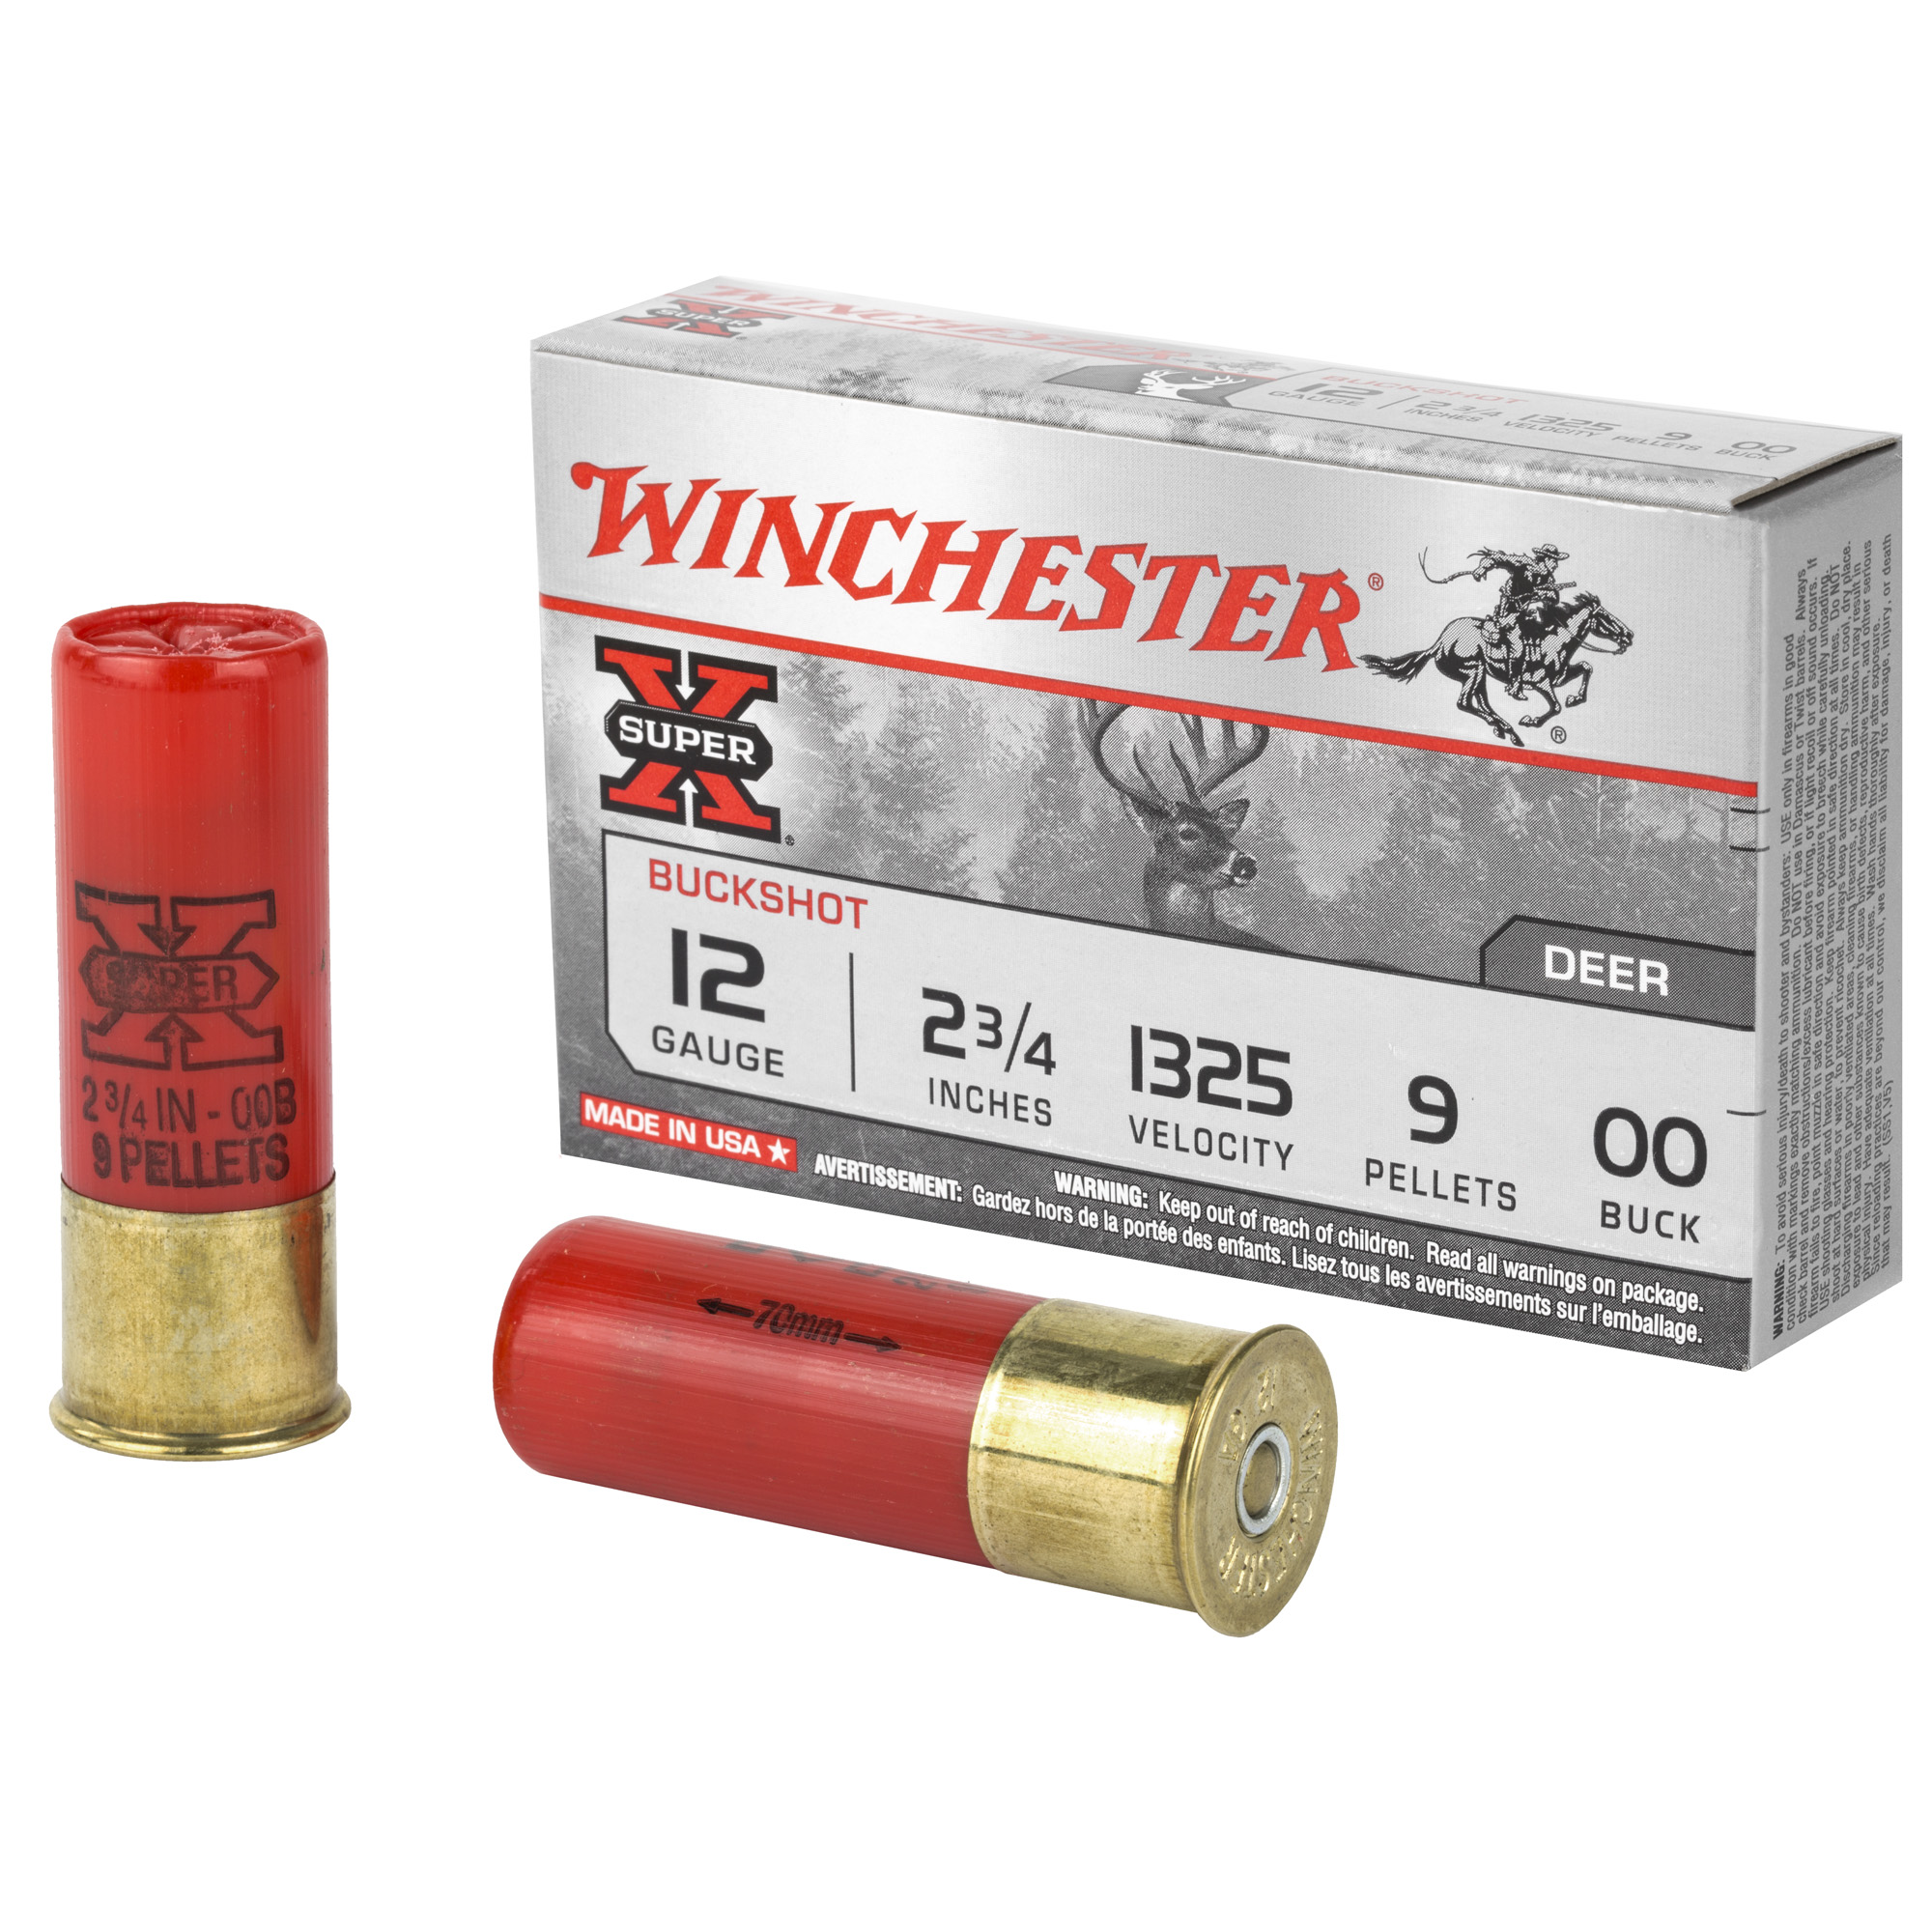 Winchester 12 Gauge 3-1/2 1-1/4 oz. 1625 FPS Super X Xpert High